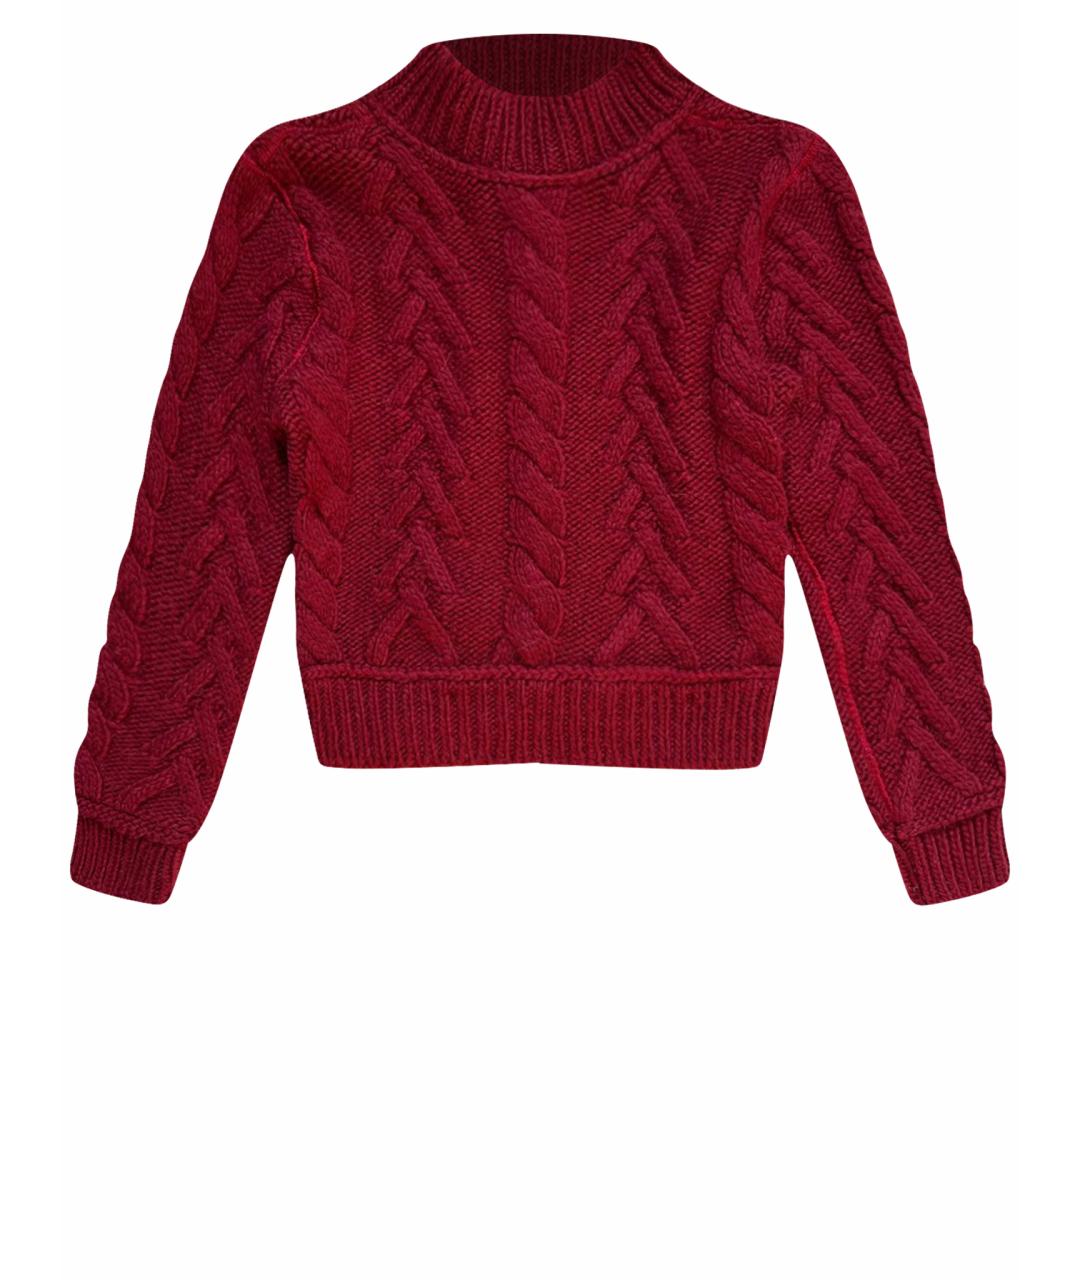 DOLCE&GABBANA Бордовый шерстяной джемпер / свитер, фото 1